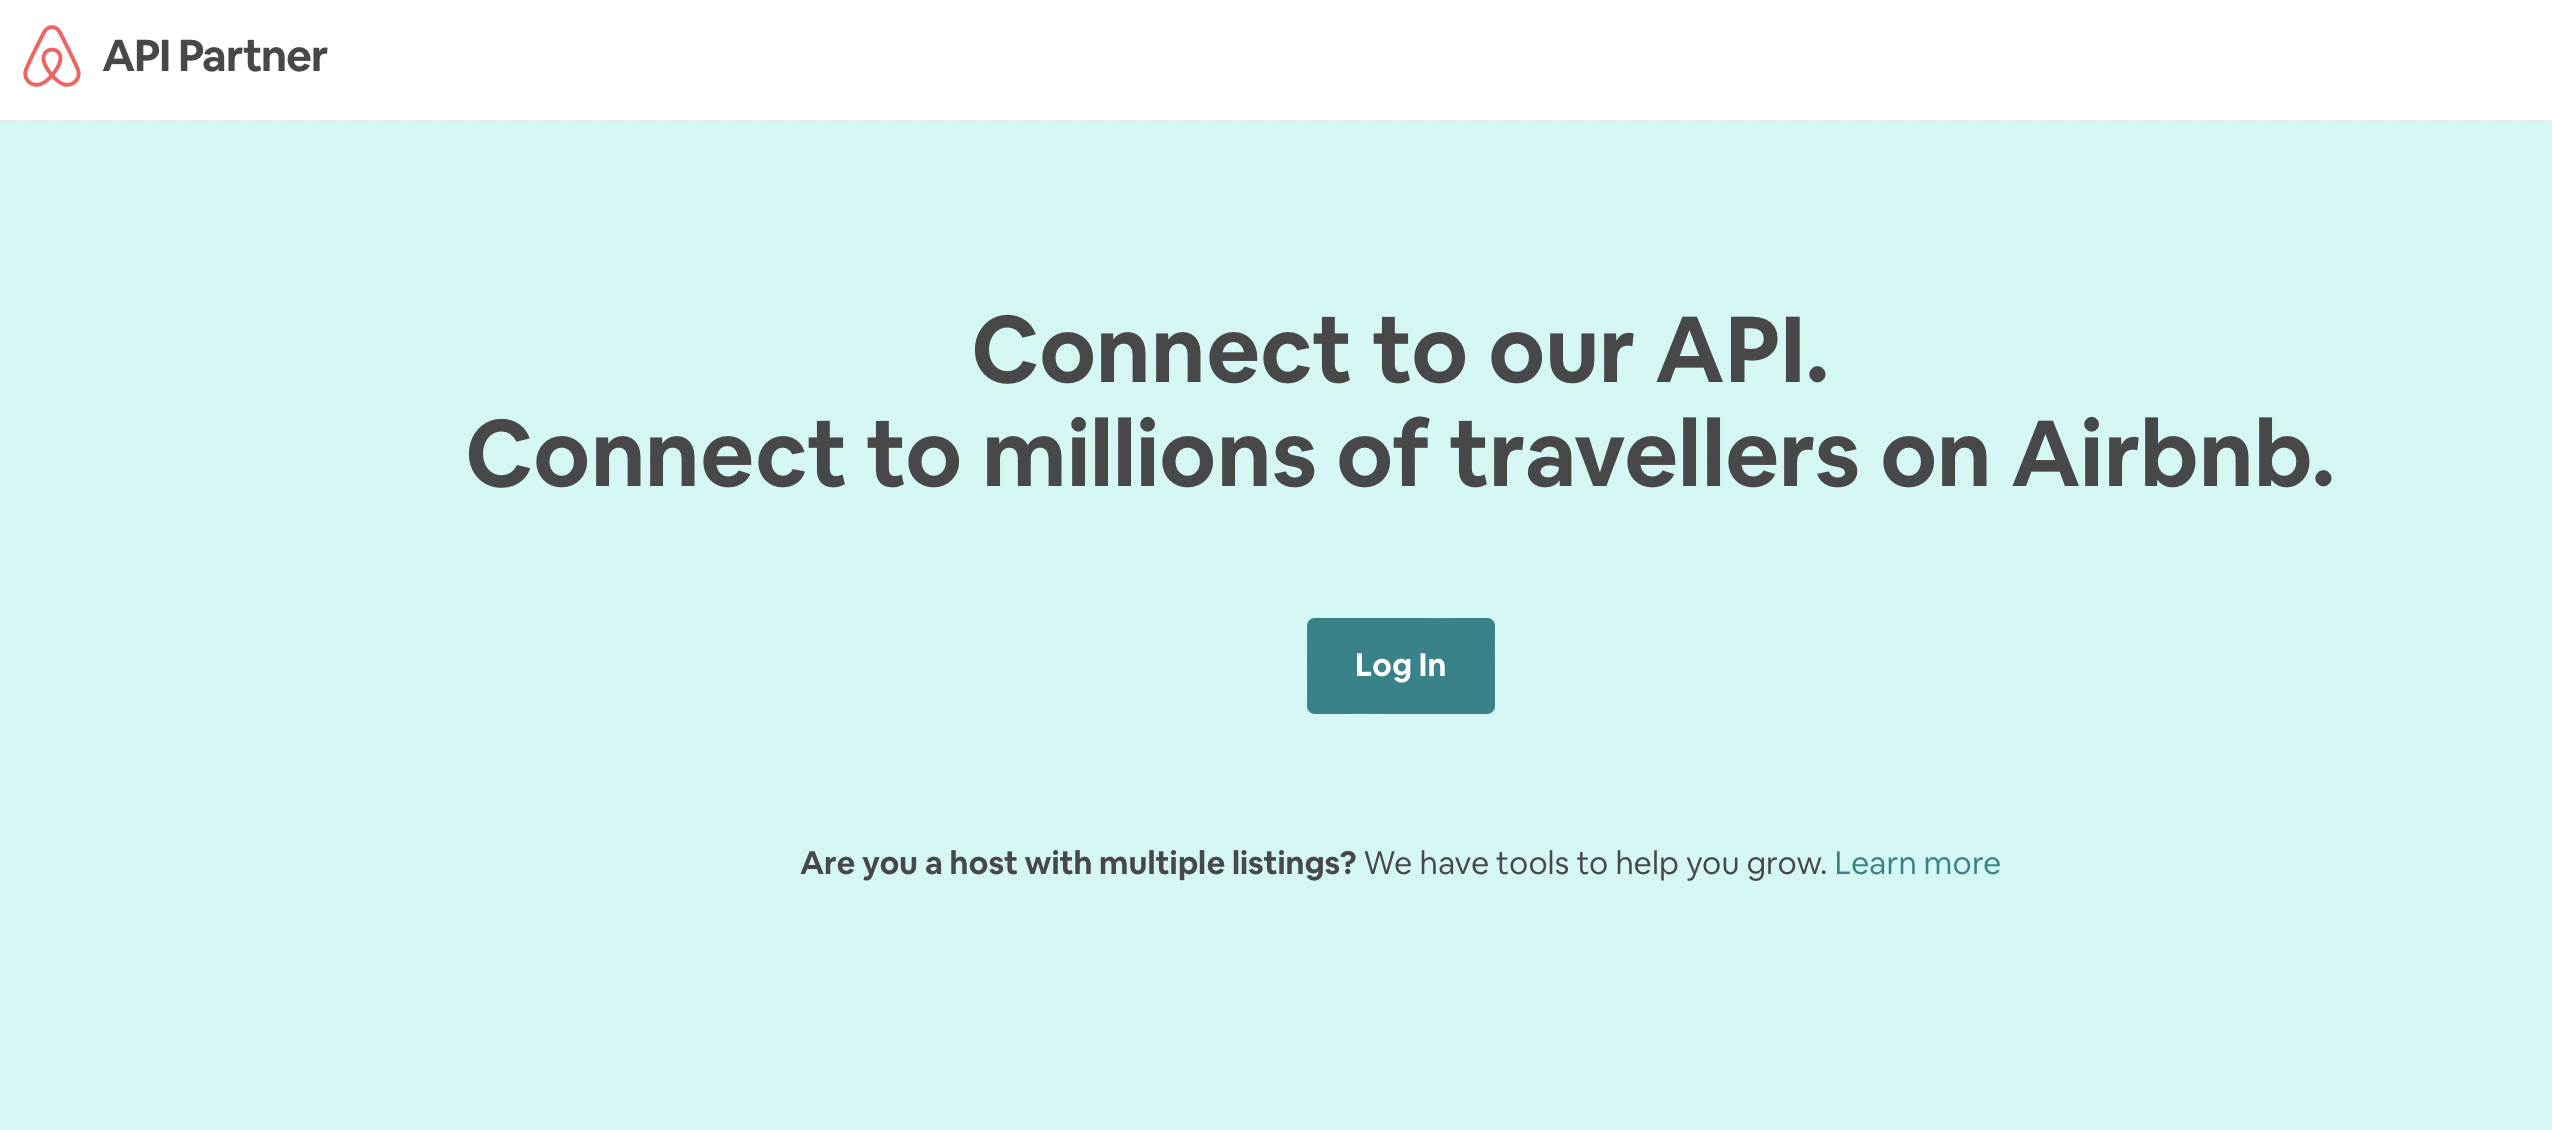 صفحه شریک airbnb از میزبان ها می خواهد که به api آن متصل شده و وارد شوند